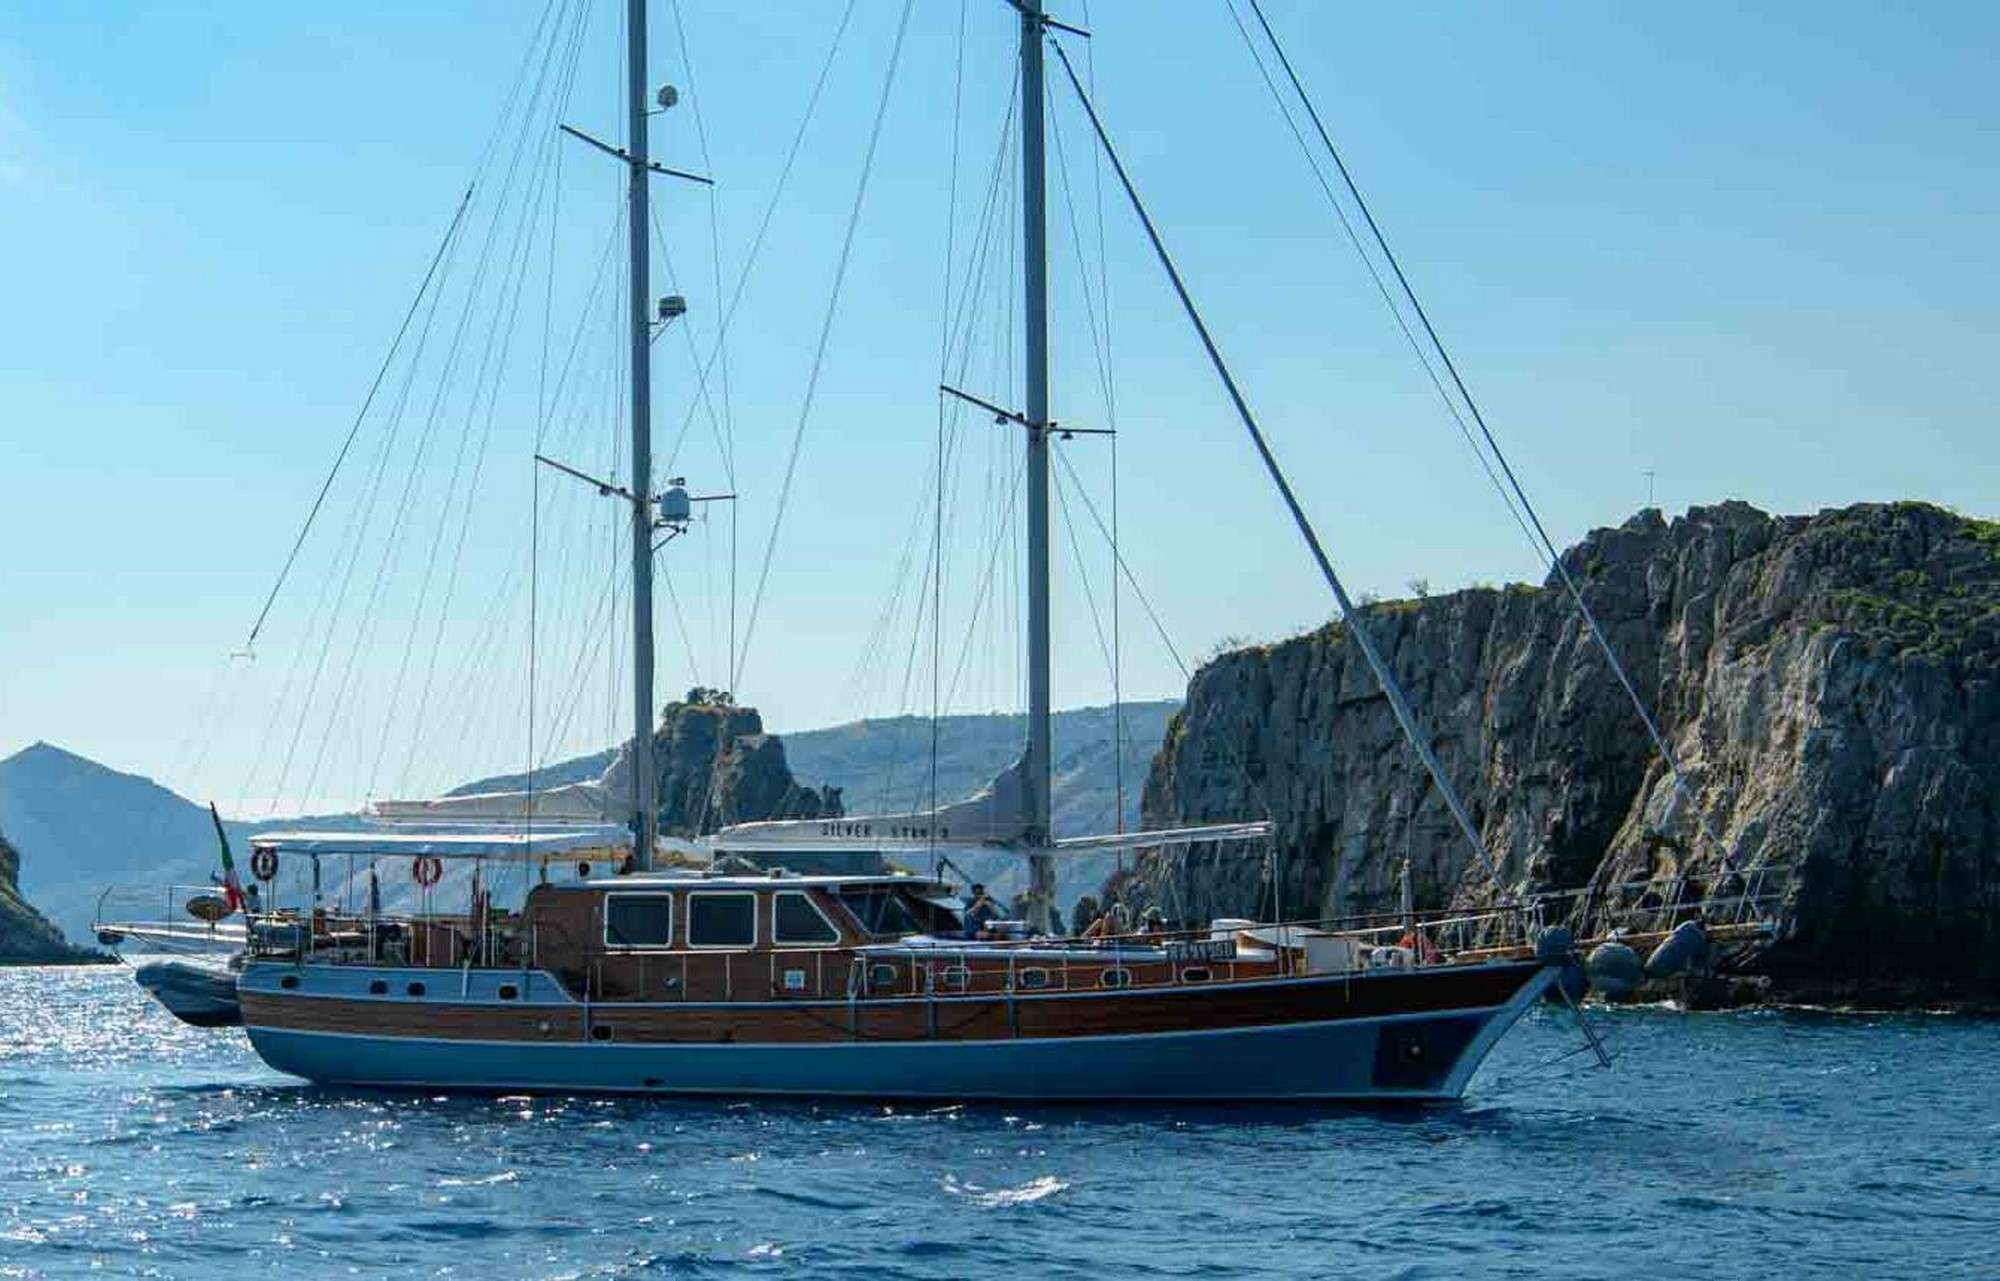 SILVER STAR 2 - Luxury yacht charter France & Boat hire in Fr. Riviera & Tyrrhenian Sea 1